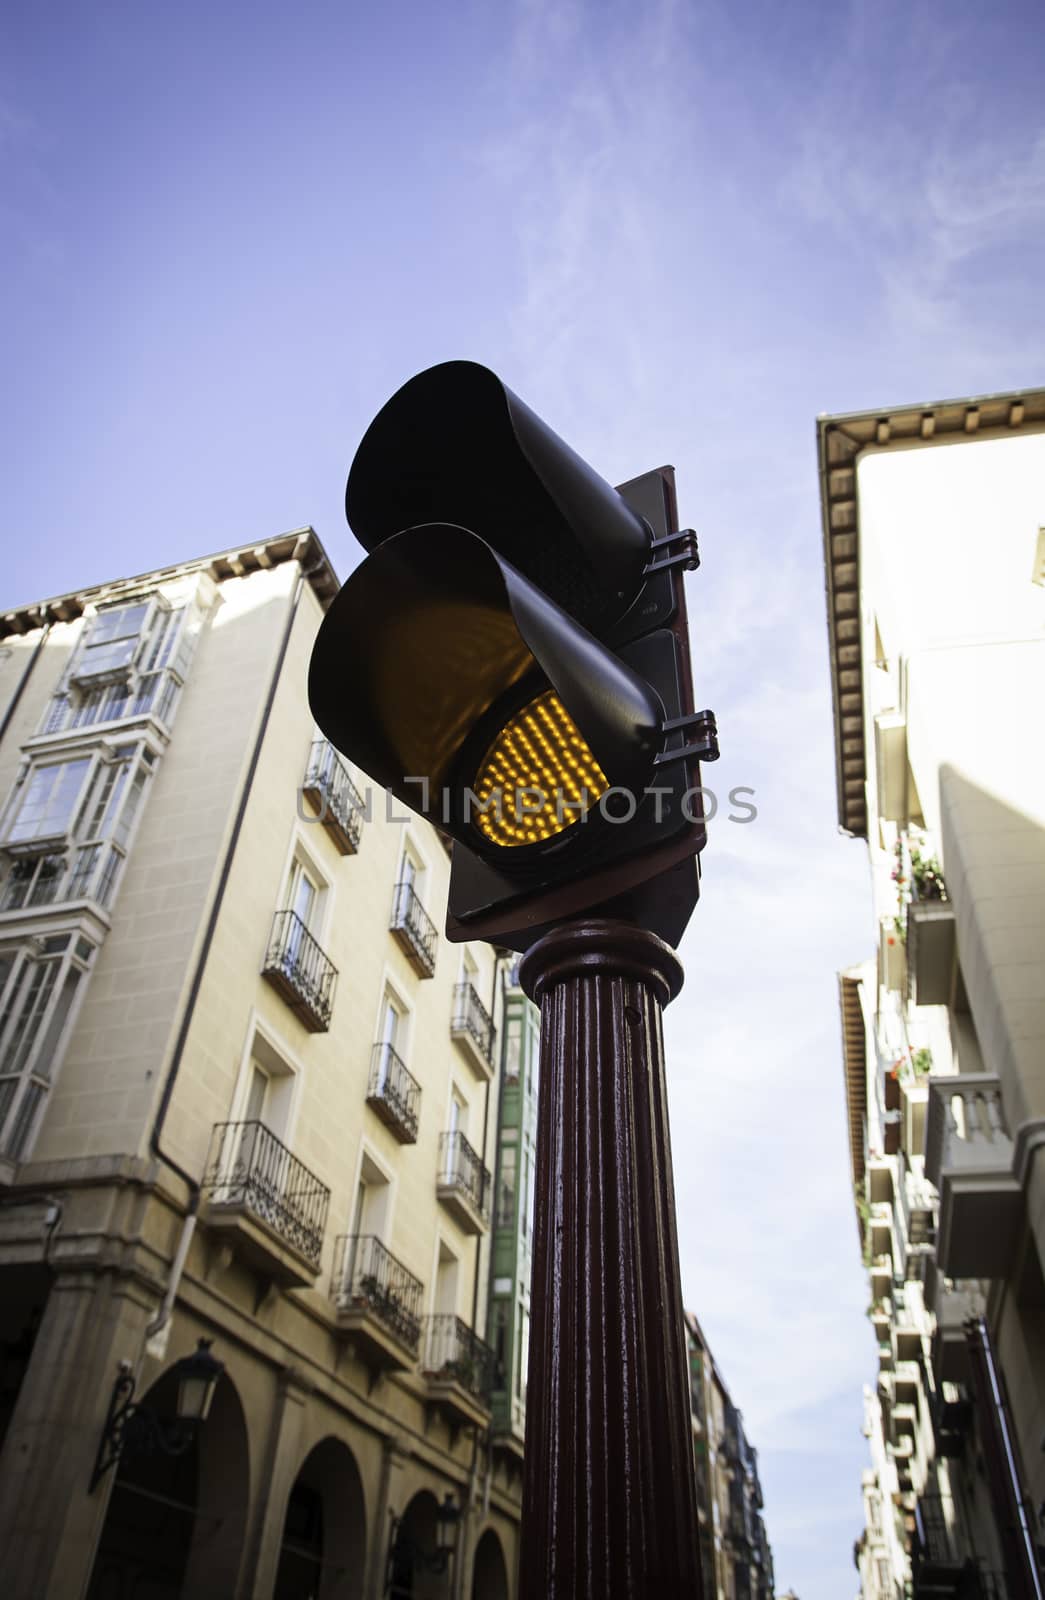 Red traffic light for cars by esebene